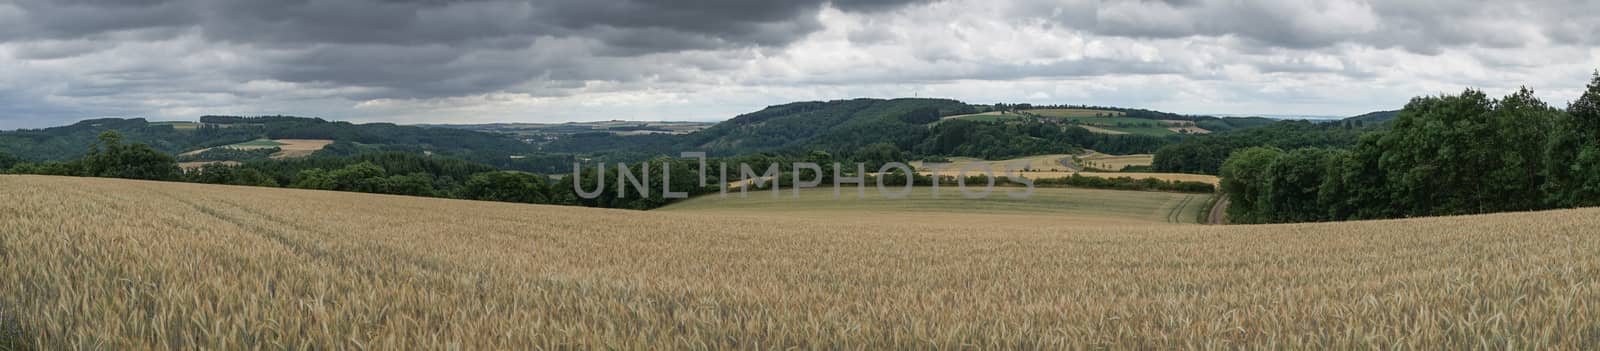 Corn field, Landscape of Eifel, Germany by alfotokunst